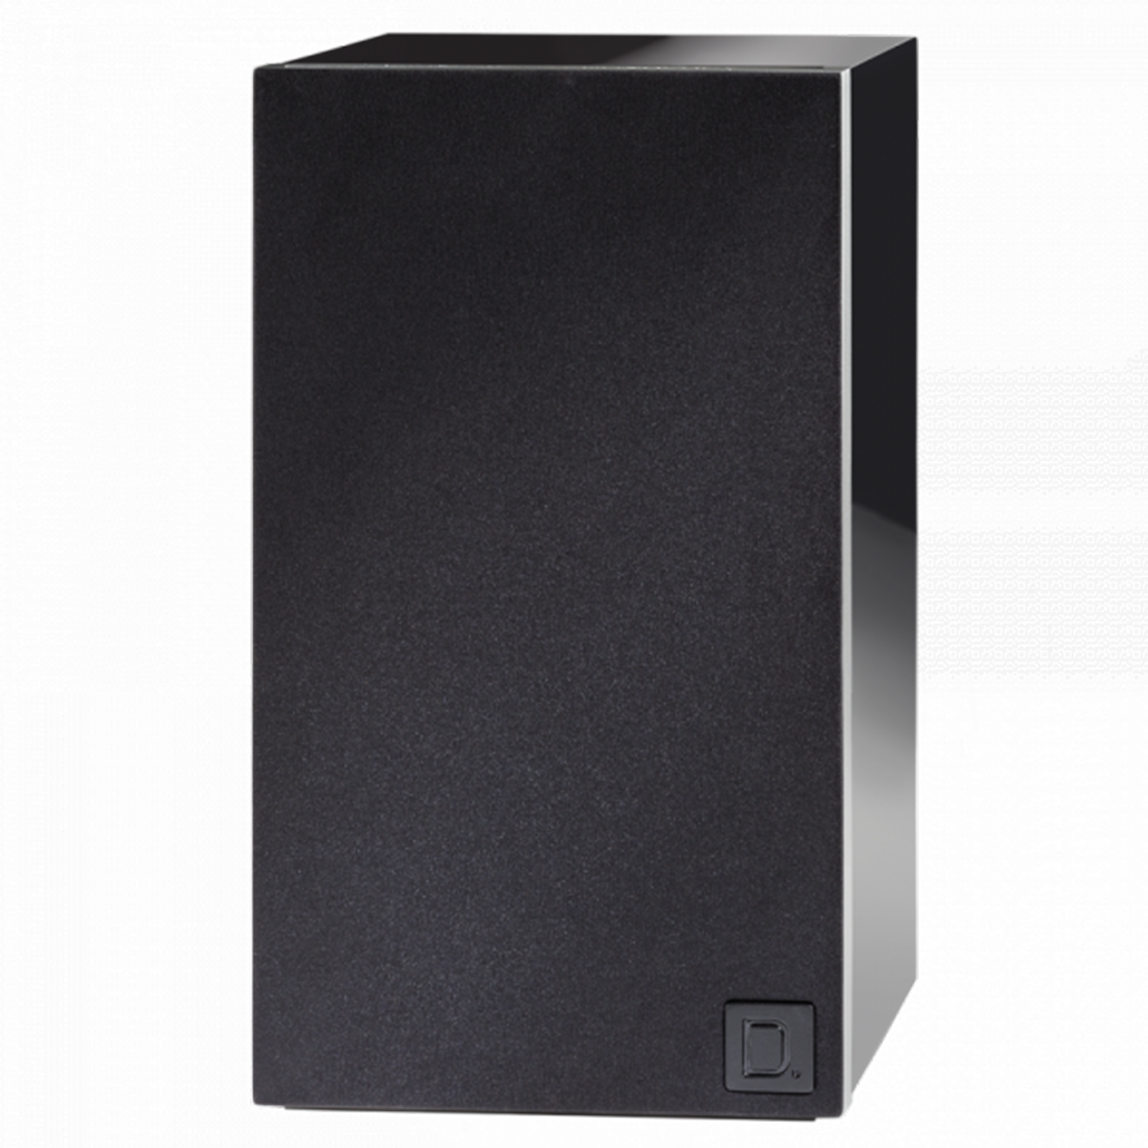 Definitive Technology D7 Demand Series High-Performance Bookshelf Speaker (Pair)